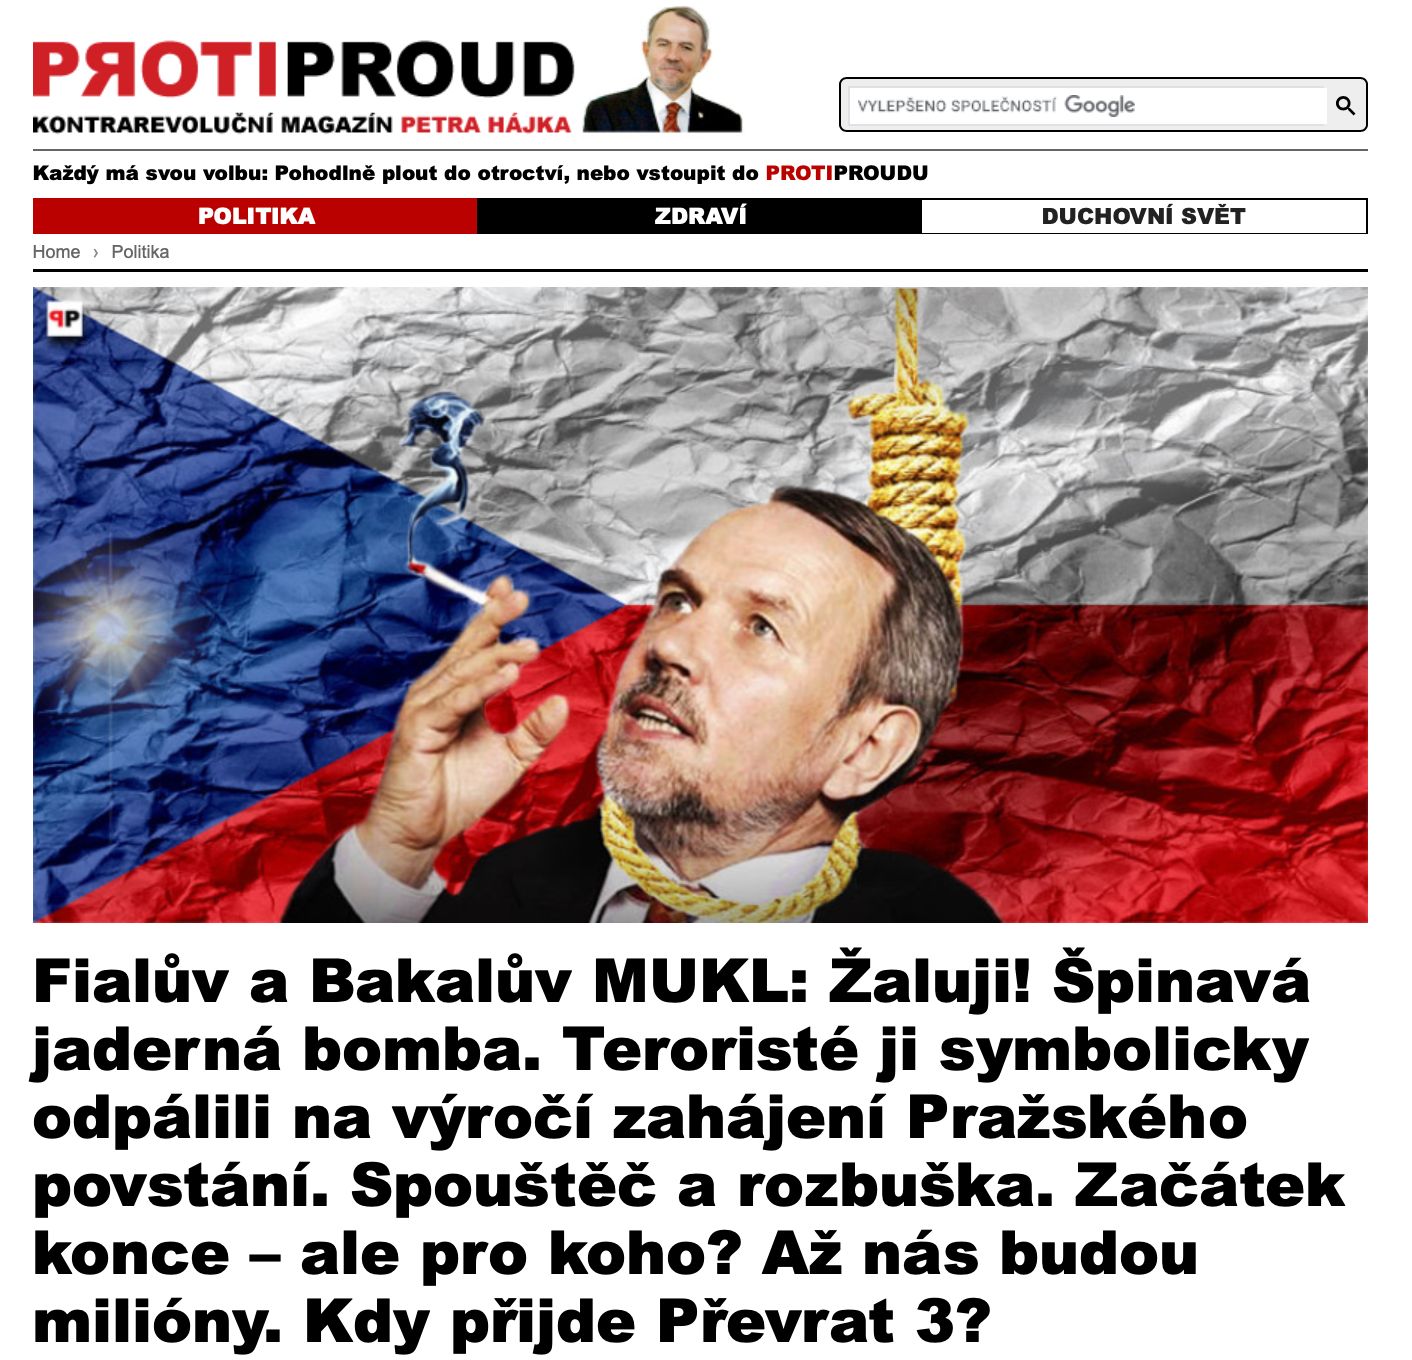 Petr Hájek na serveru Protiproud reagoval na zjištění Aktuálně.cz a HN tím, že jde spiknutí proti němu. Kdo mu poslal miliony na podnikání ale nevysvětlil.